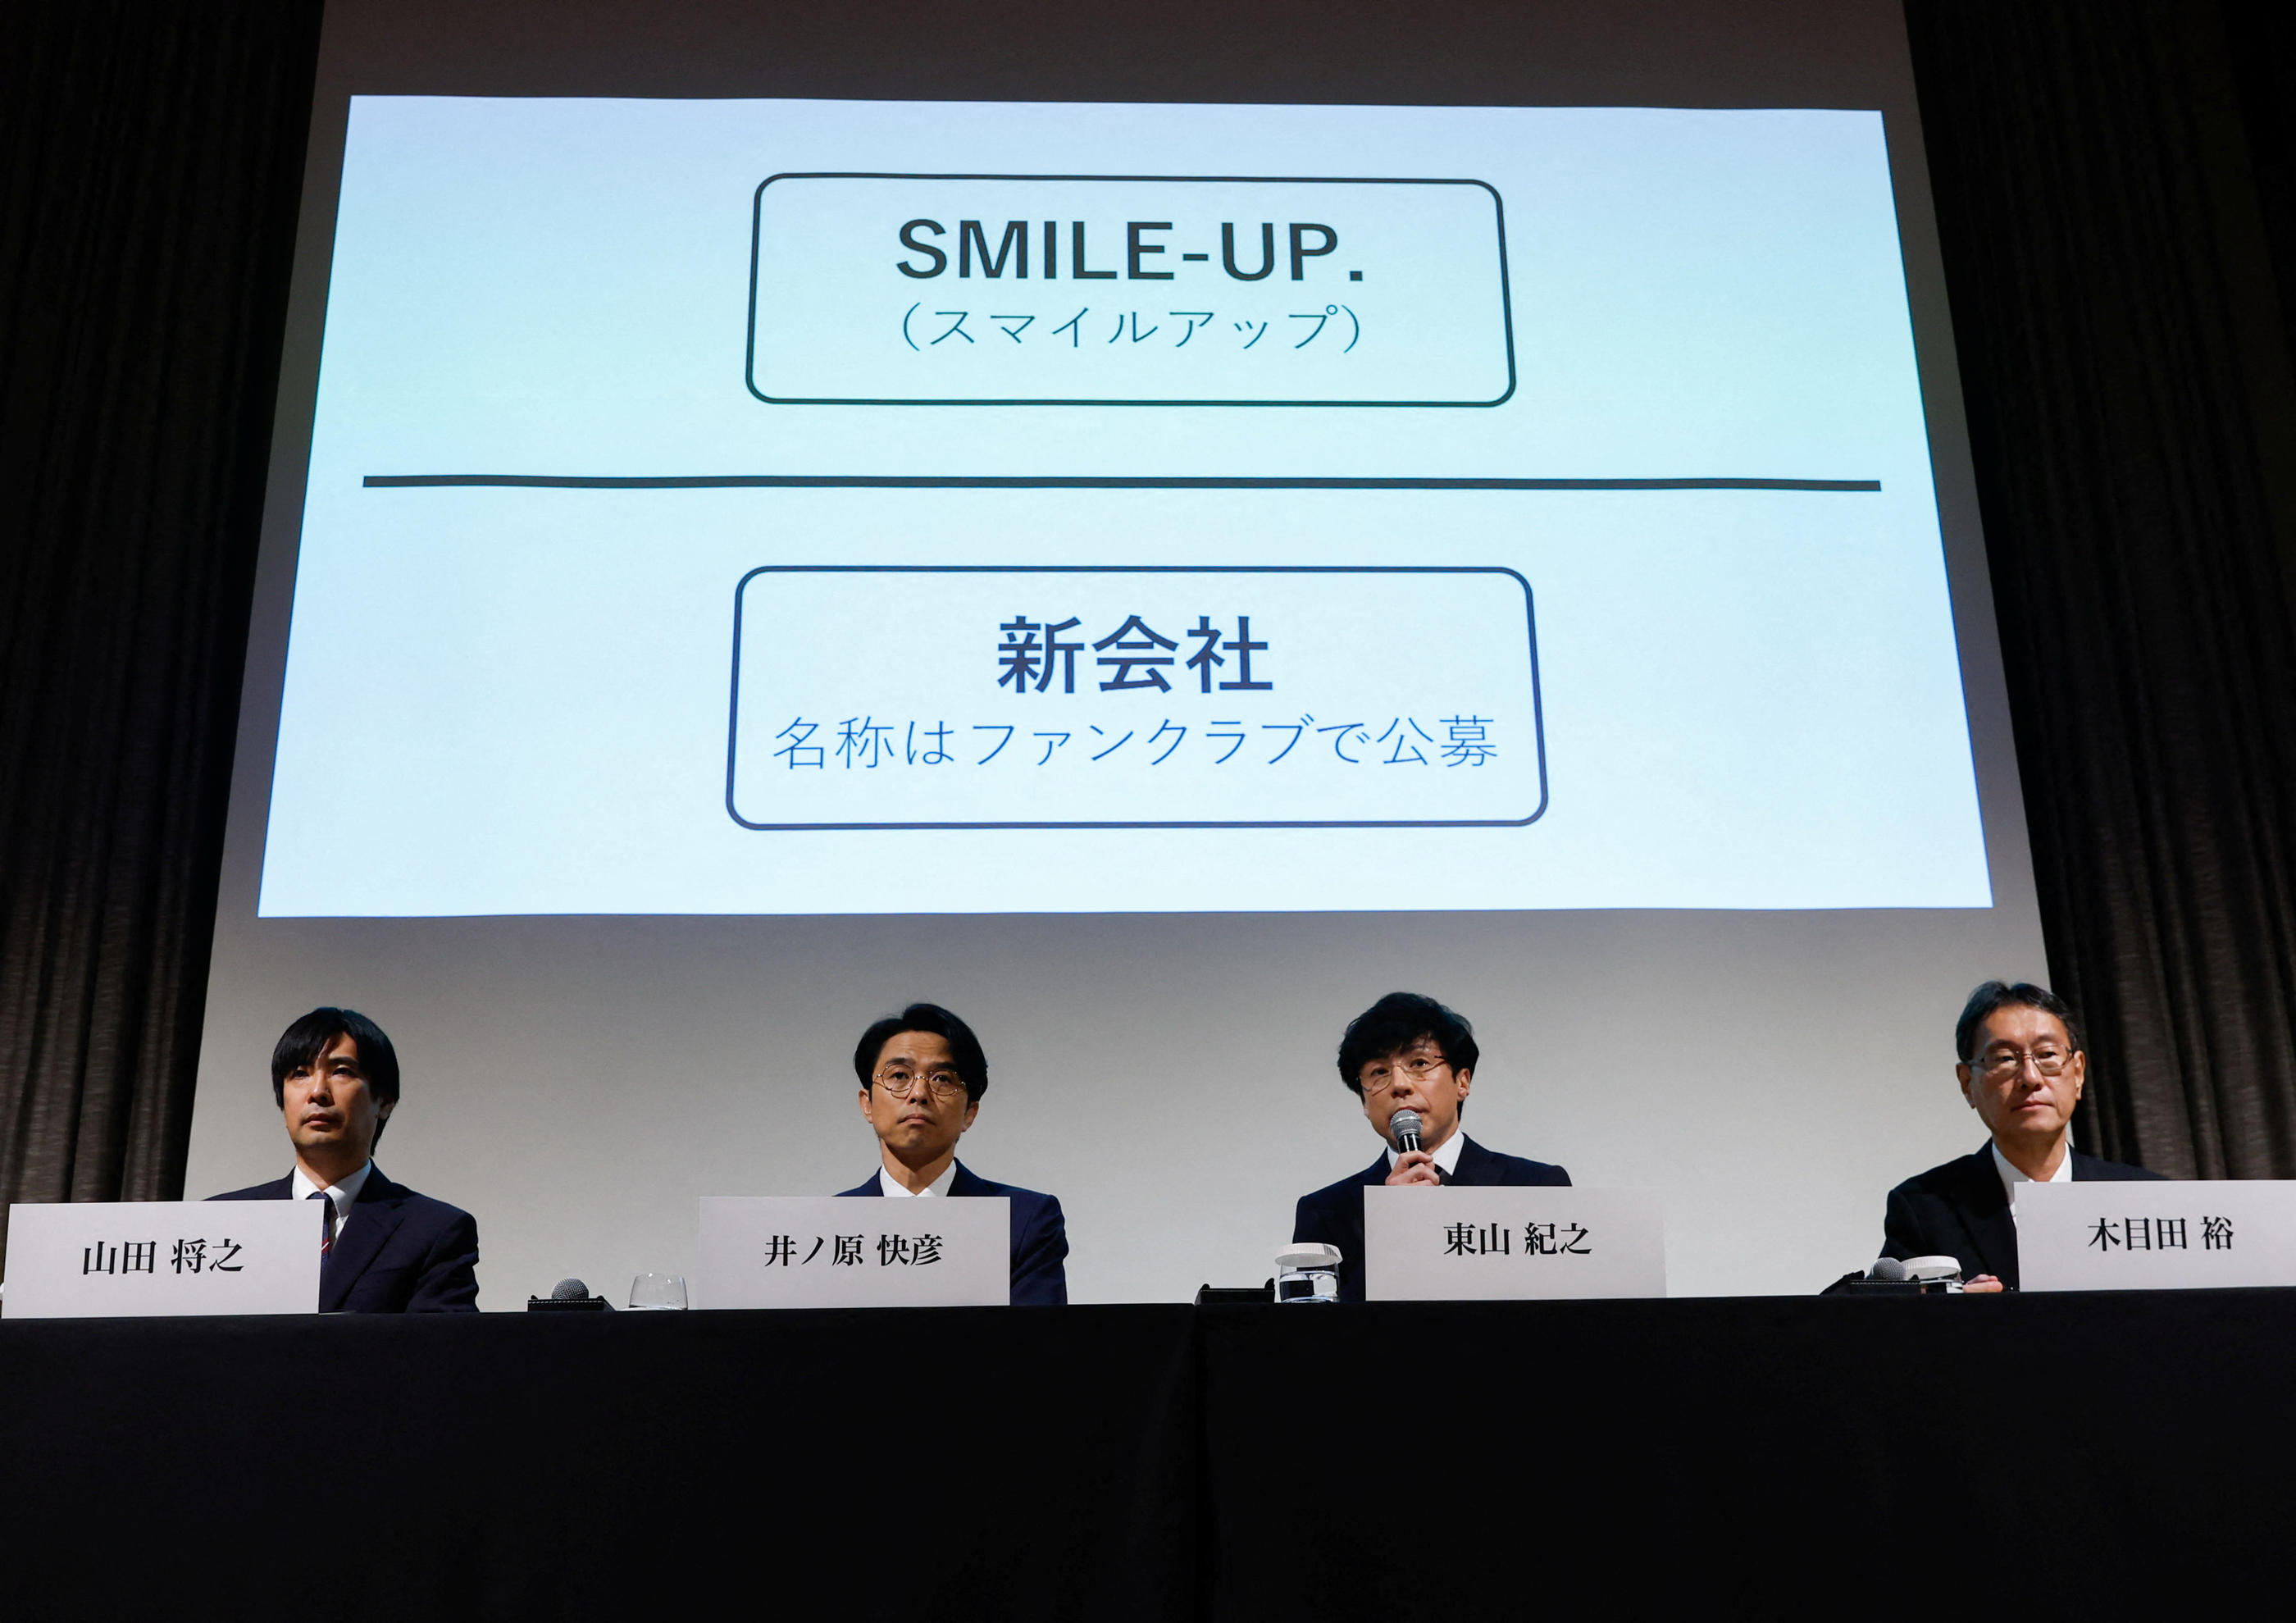 La société Johnny & Associates, renommée "Smile-Up", va être scindée en deux structures après un vaste scandale d'agressions sexuelles. REUTERS/Issei Kato